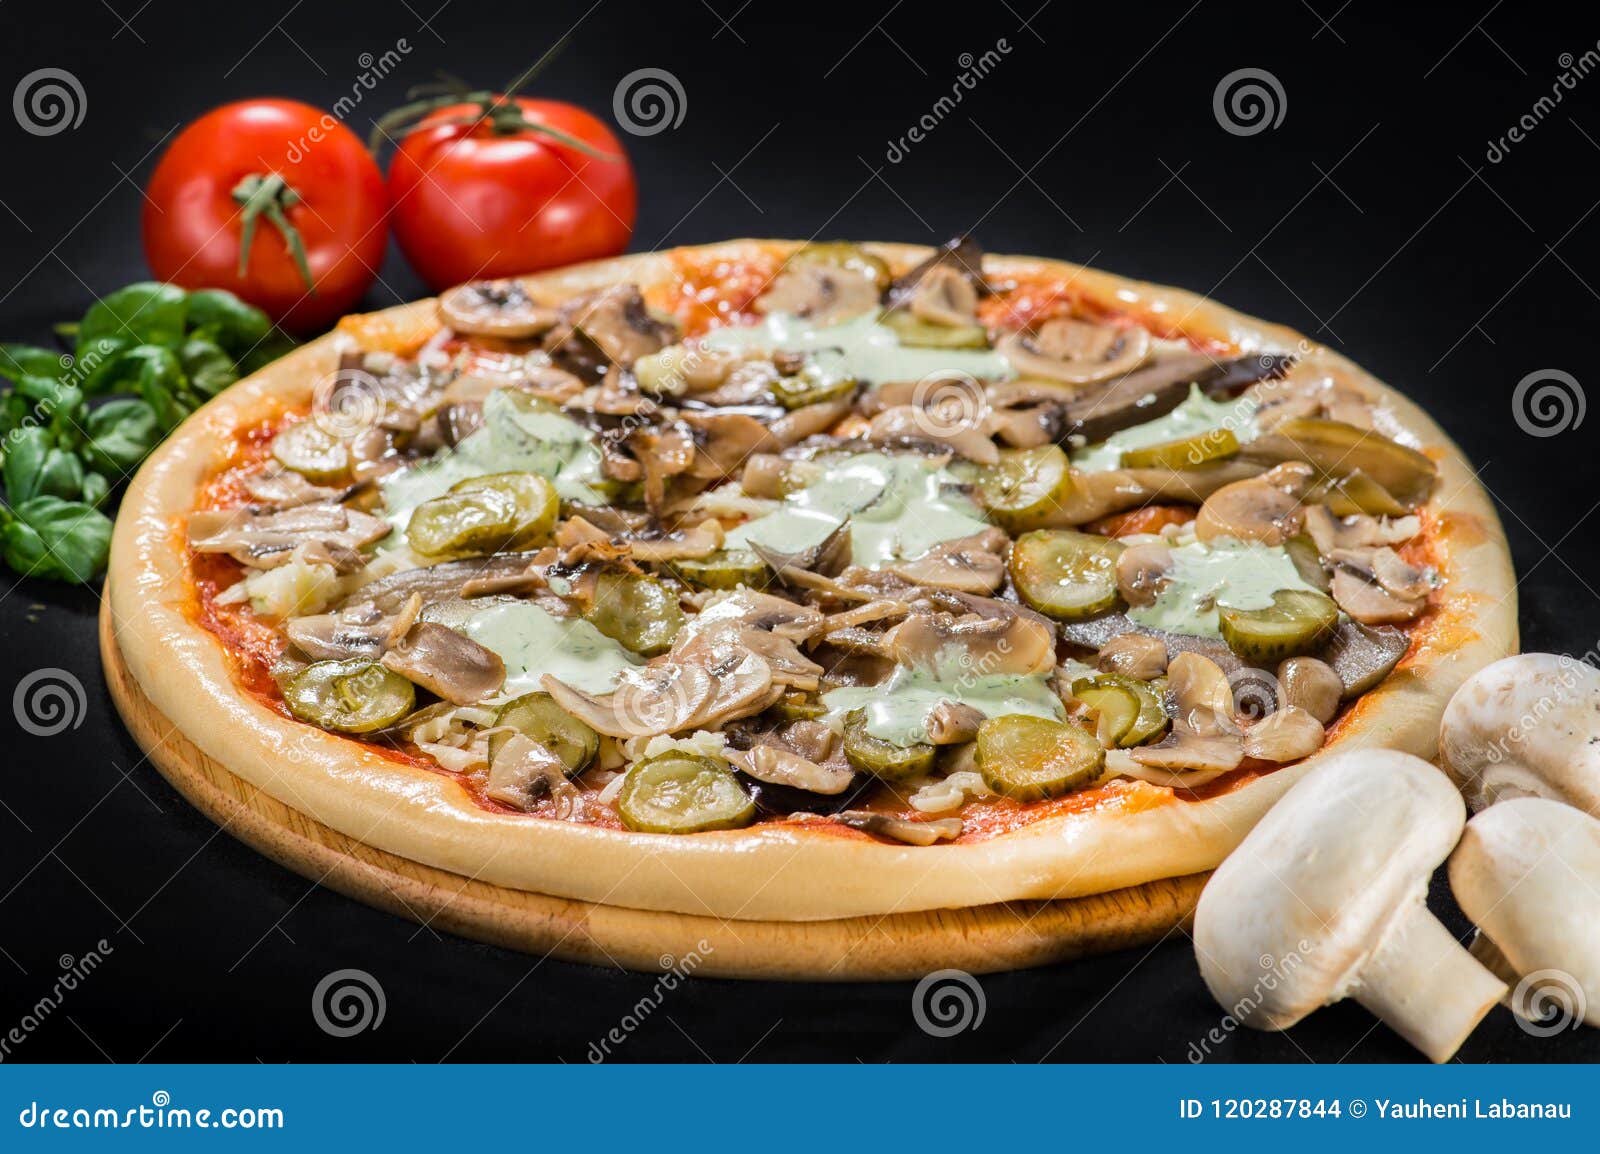 пицца грибная с оливками фото 118